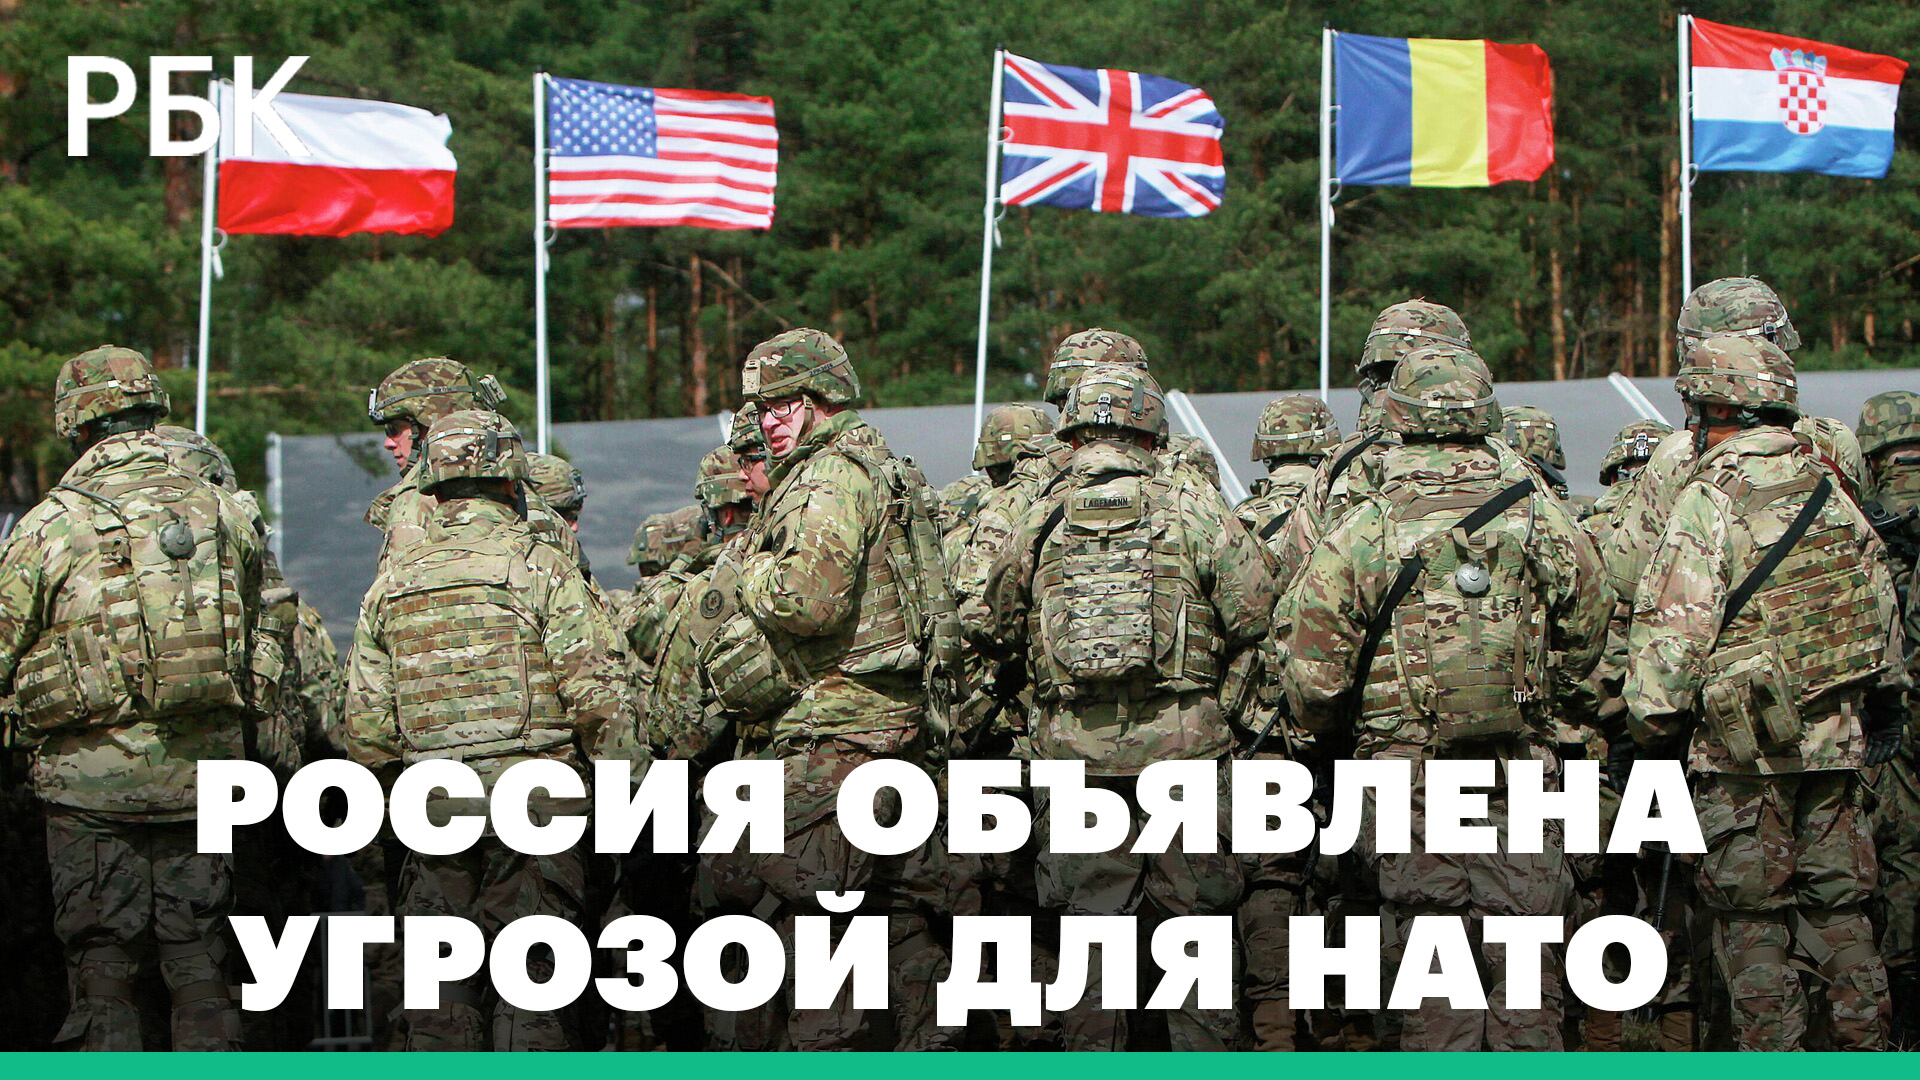 Россия грозит нато. НАТО враг. Противники НАТО. Угроза НАТО. НАТО враг человечества.